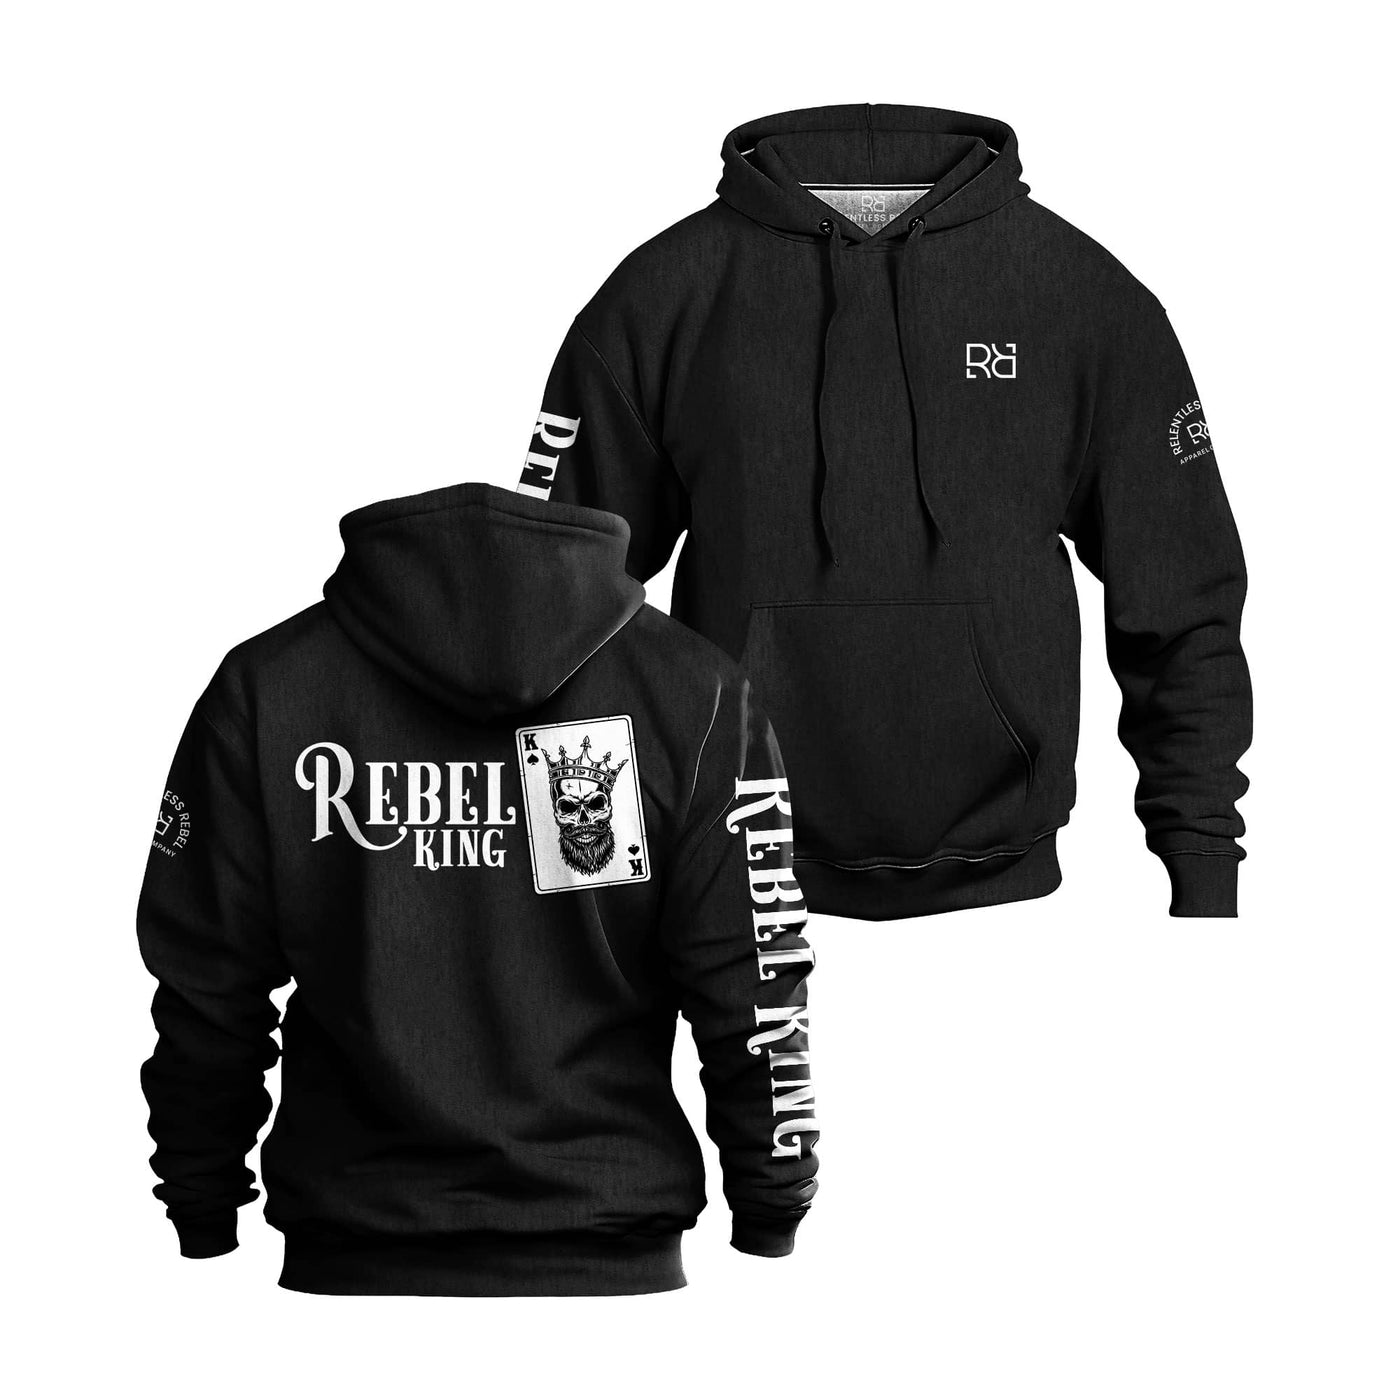 Solid Black Men's Rebel King Sleeve & Back Design Hoodie